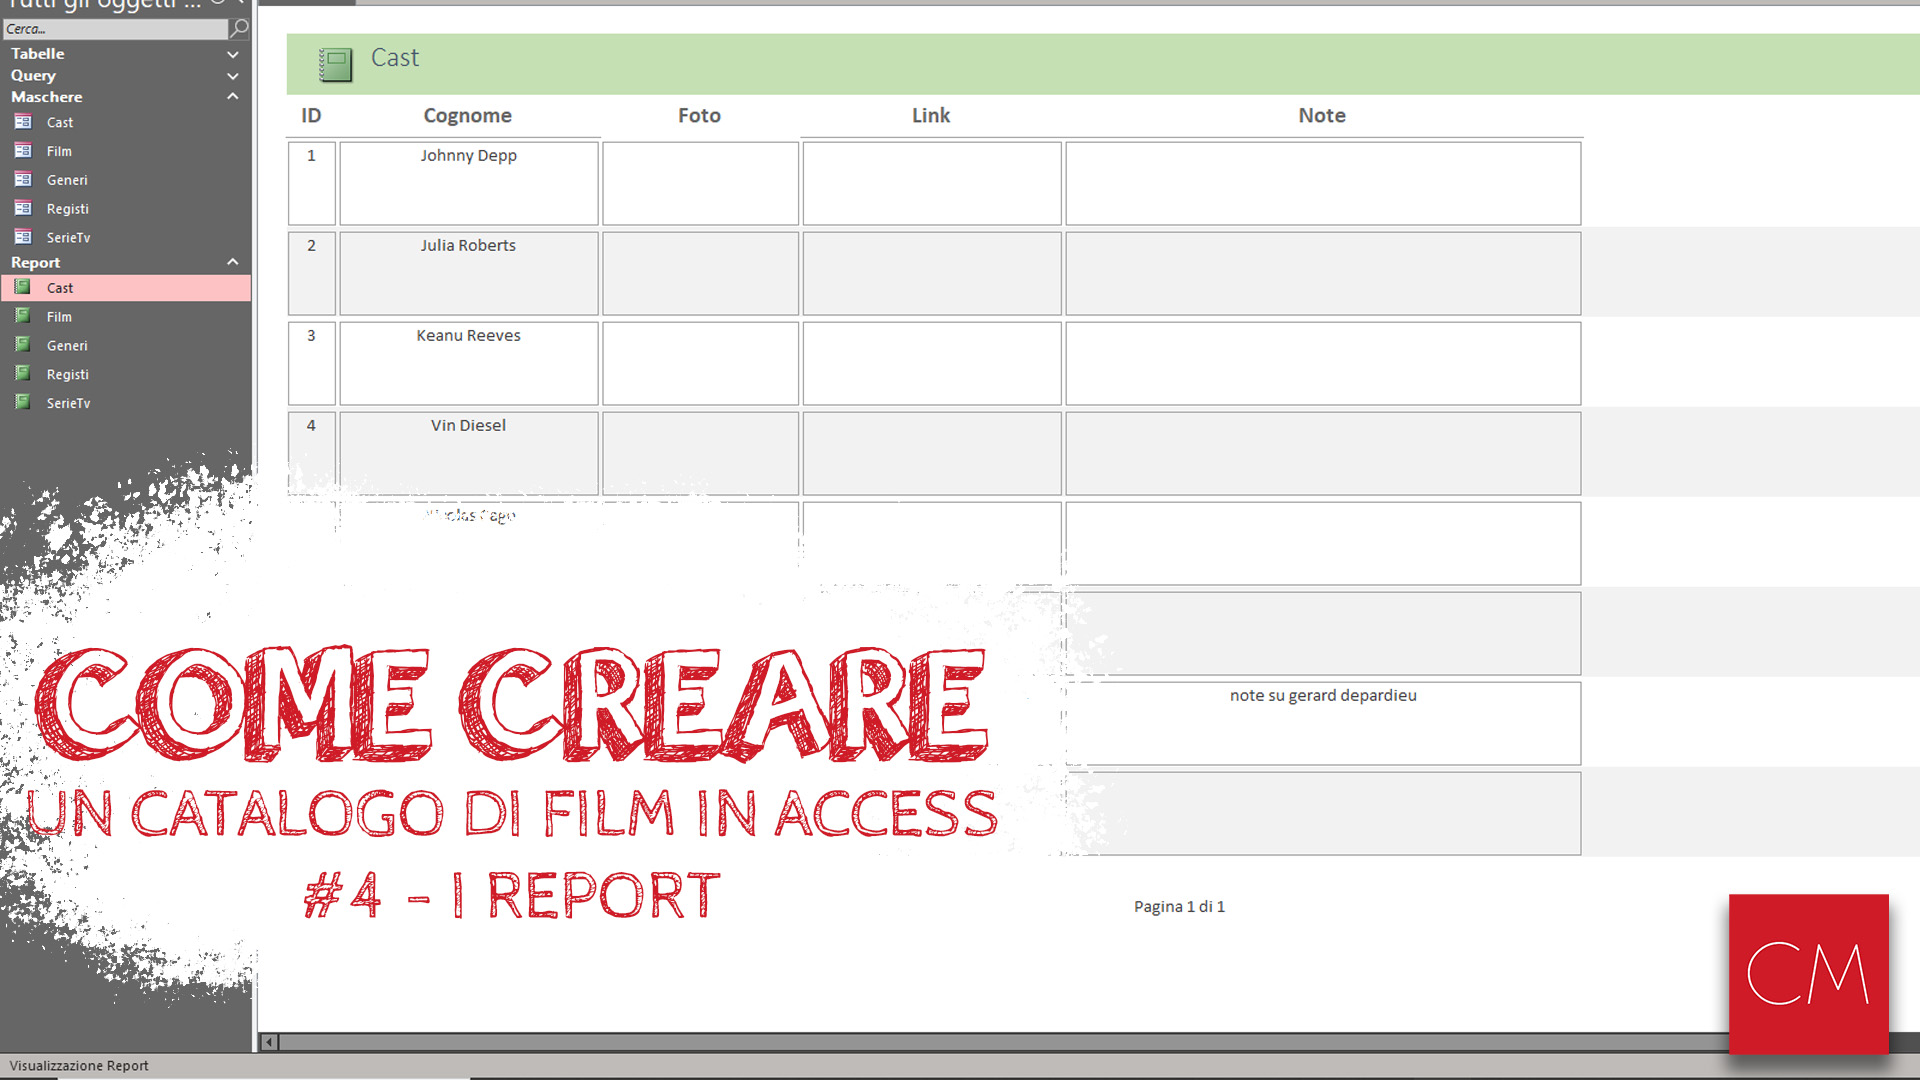 Creare un Catalogo di Film in Access - #4 - I Report